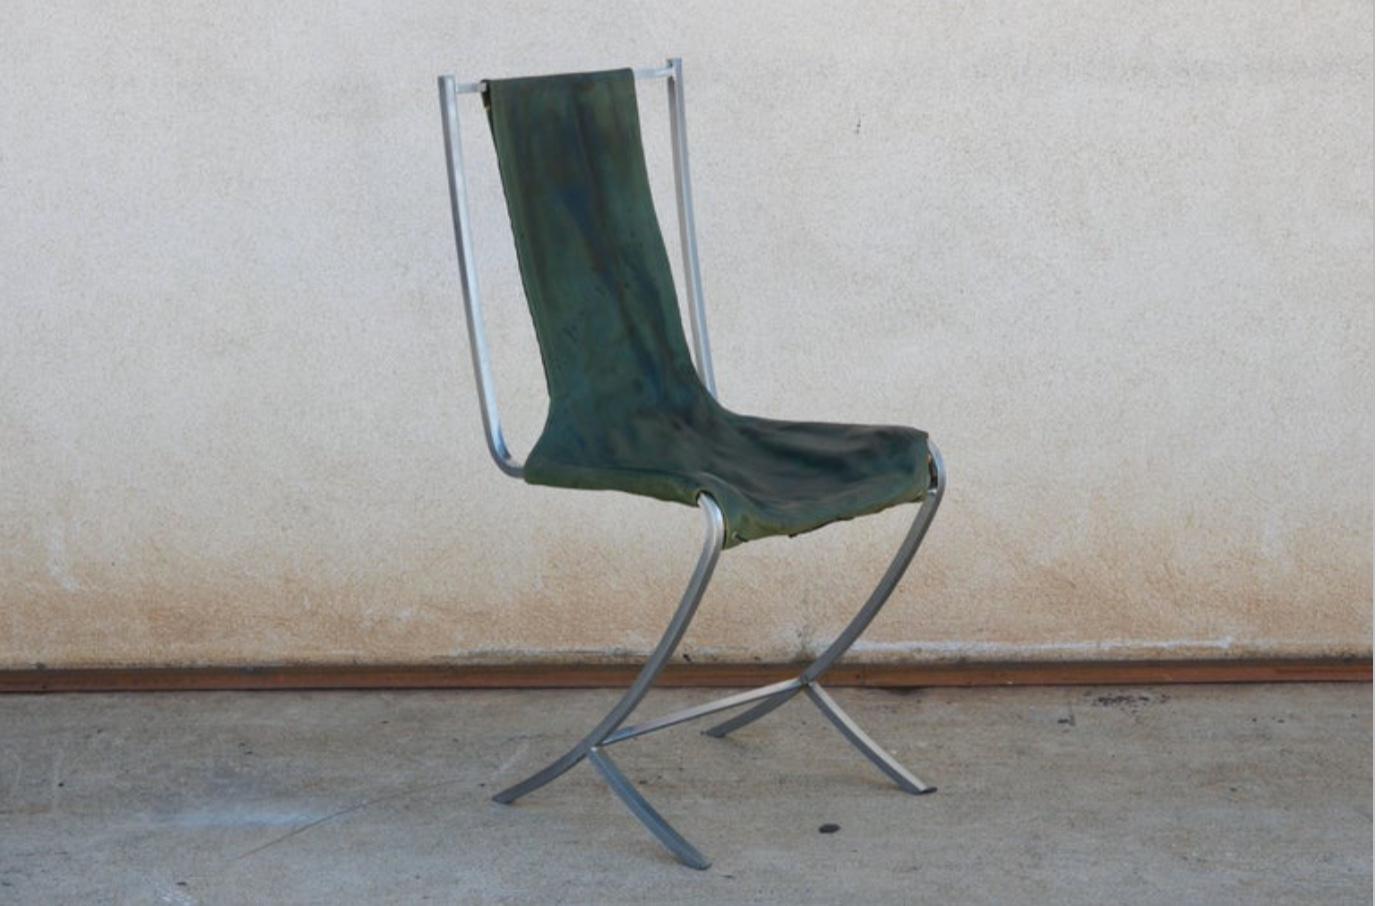 Seltener Satz von fünf Stühlen aus Edelstahl (acier inoxydable) von Maison Jansen. Hergestellt von Usinox. Original grüne Ledersitz- und Rückenbezüge, die durch C.O.M. ersetzt werden müssen (6 Meter).

Hervorragend geeignet als Fünfer-Set für einen